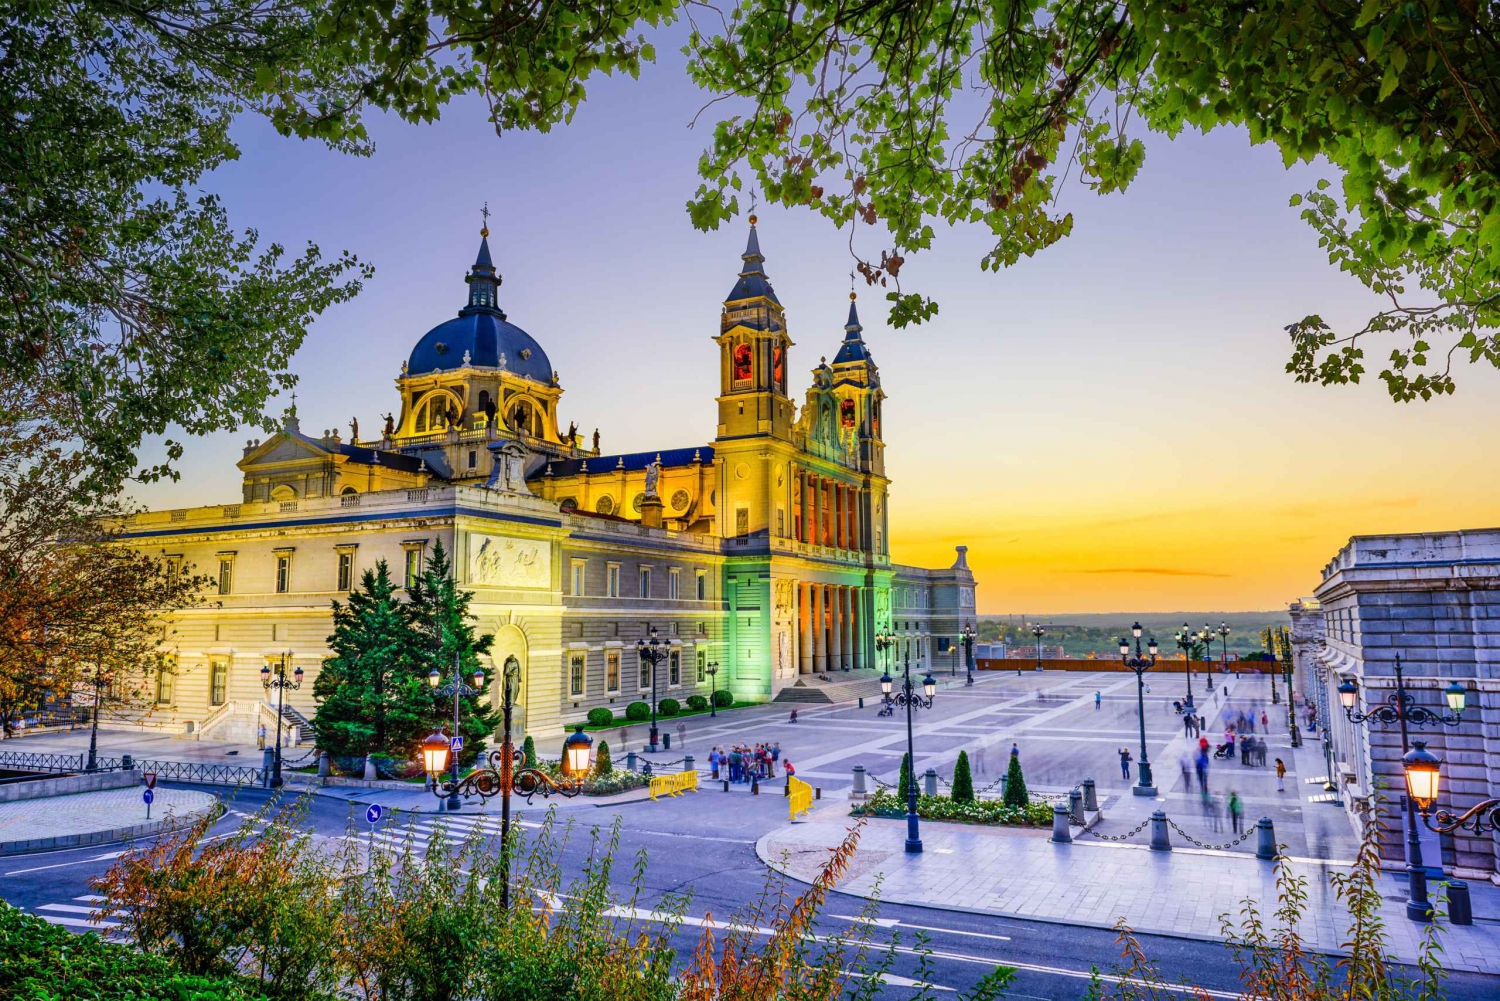 Madryt: Wycieczka z przewodnikiem po Pałacu Królewskim i katedrze Almudena